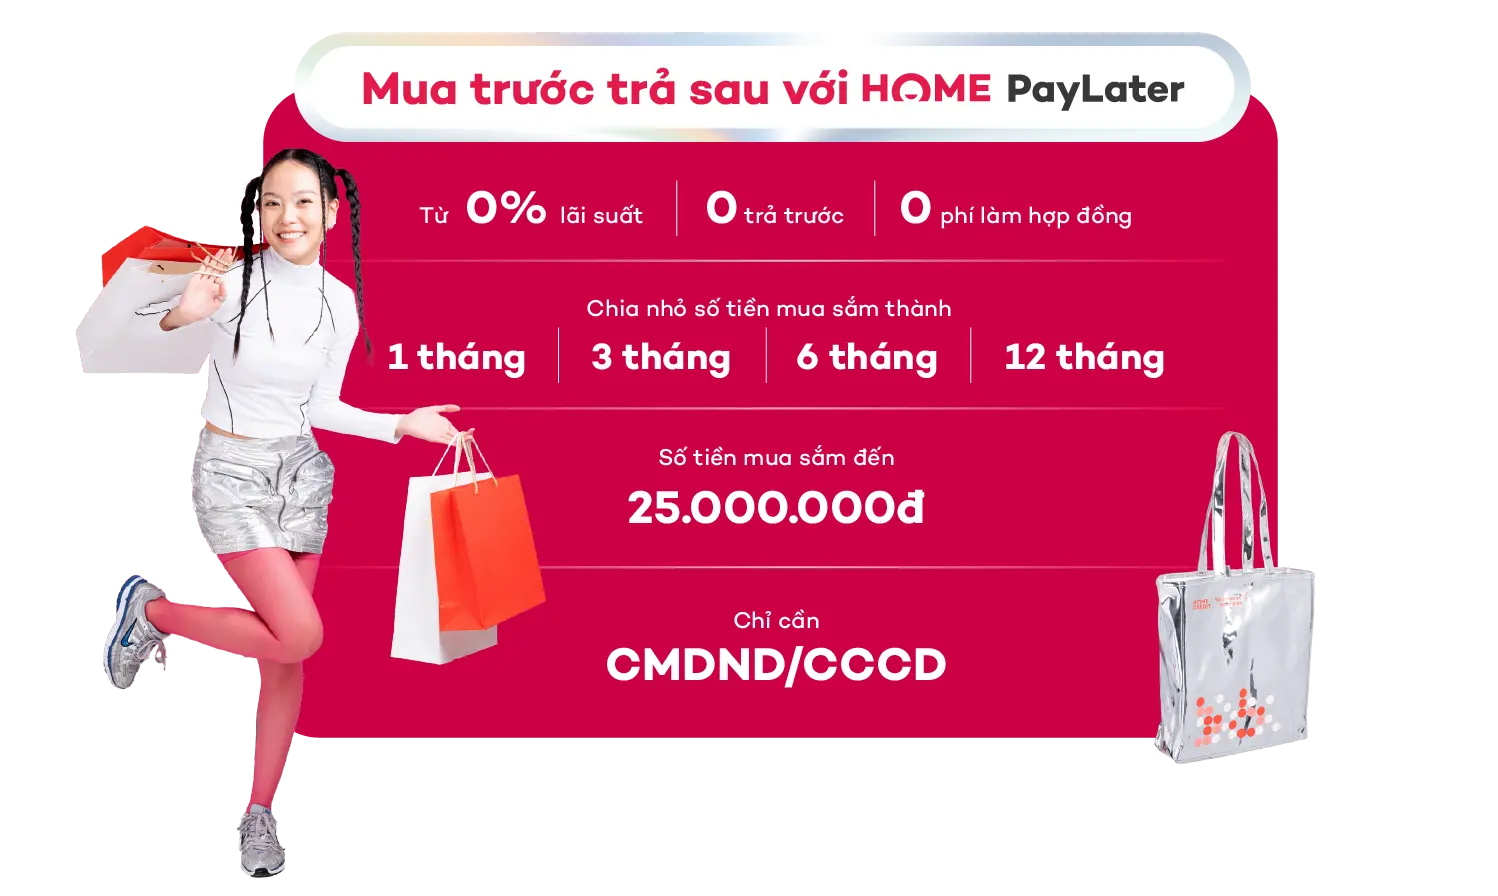 Home PayLater - Trải nghiệm mua sắm hiện đại và cơ hội nhận ngay khuyến mãi hot - 3